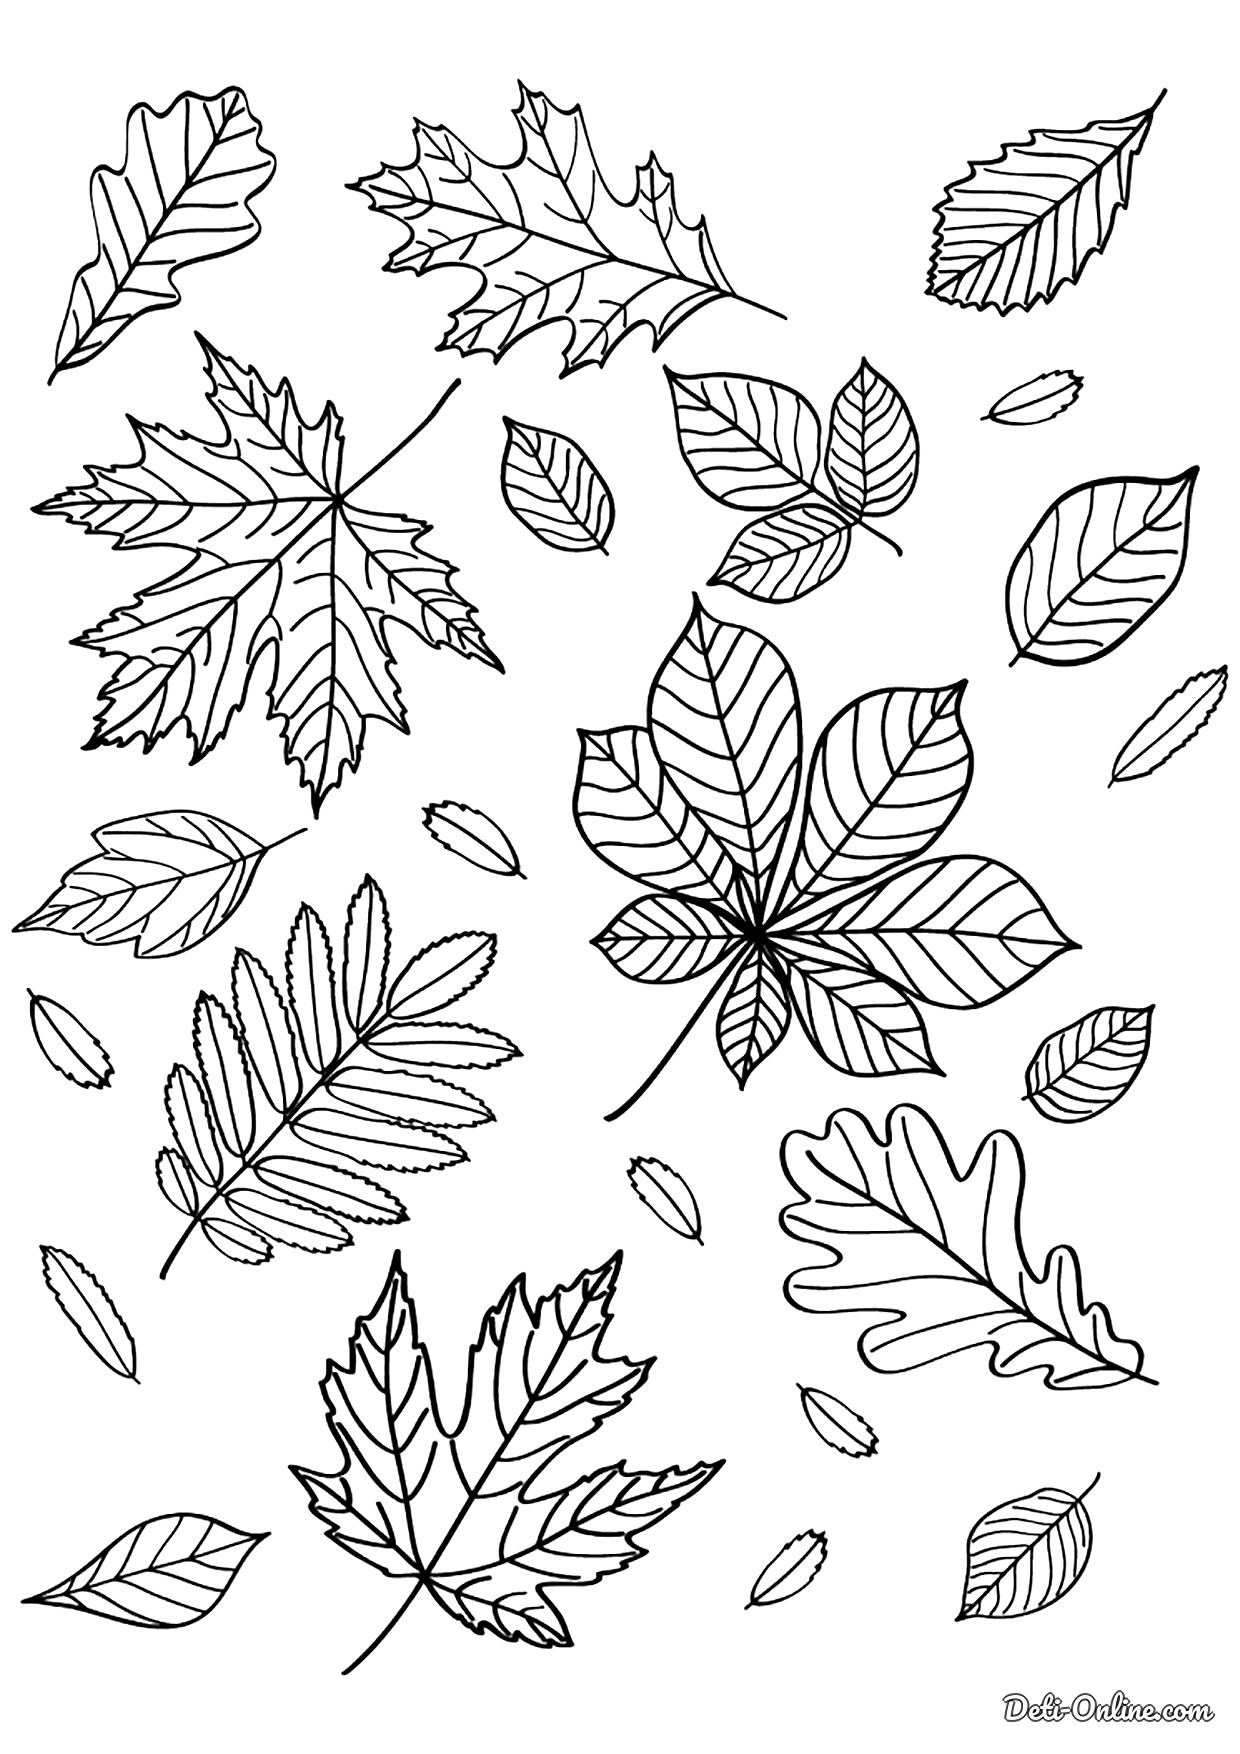 Раскрась листочки. Листья раскраска. Листик раскраска. Раскраска осень листья. Осенние листочки раскраска.